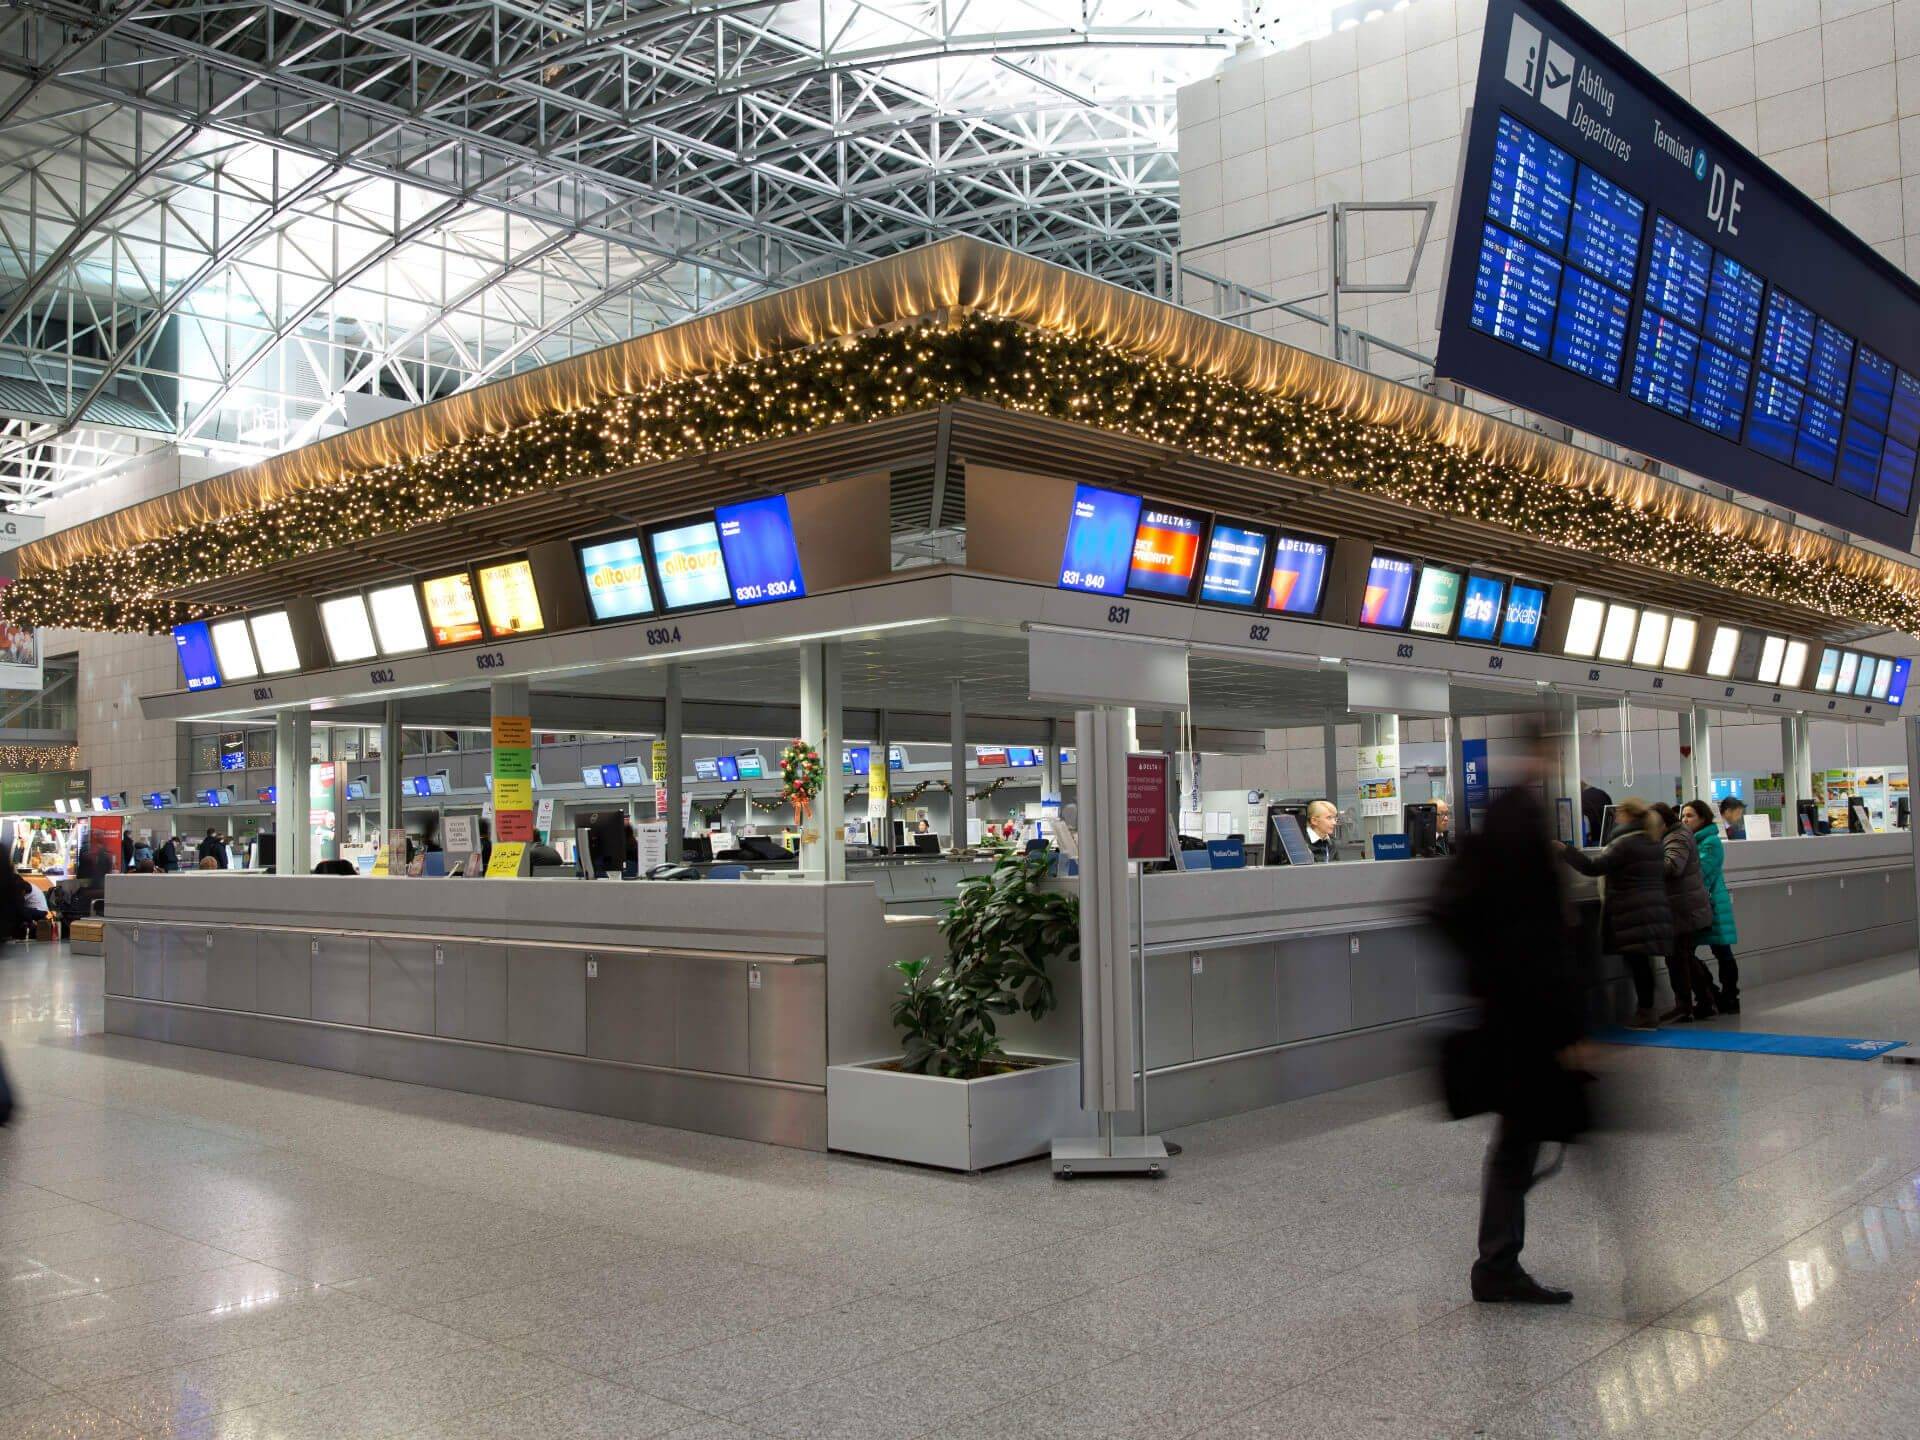 Аэропорт франкфурт: советы транзитным пассажирам и развлечения в ожидании рейса